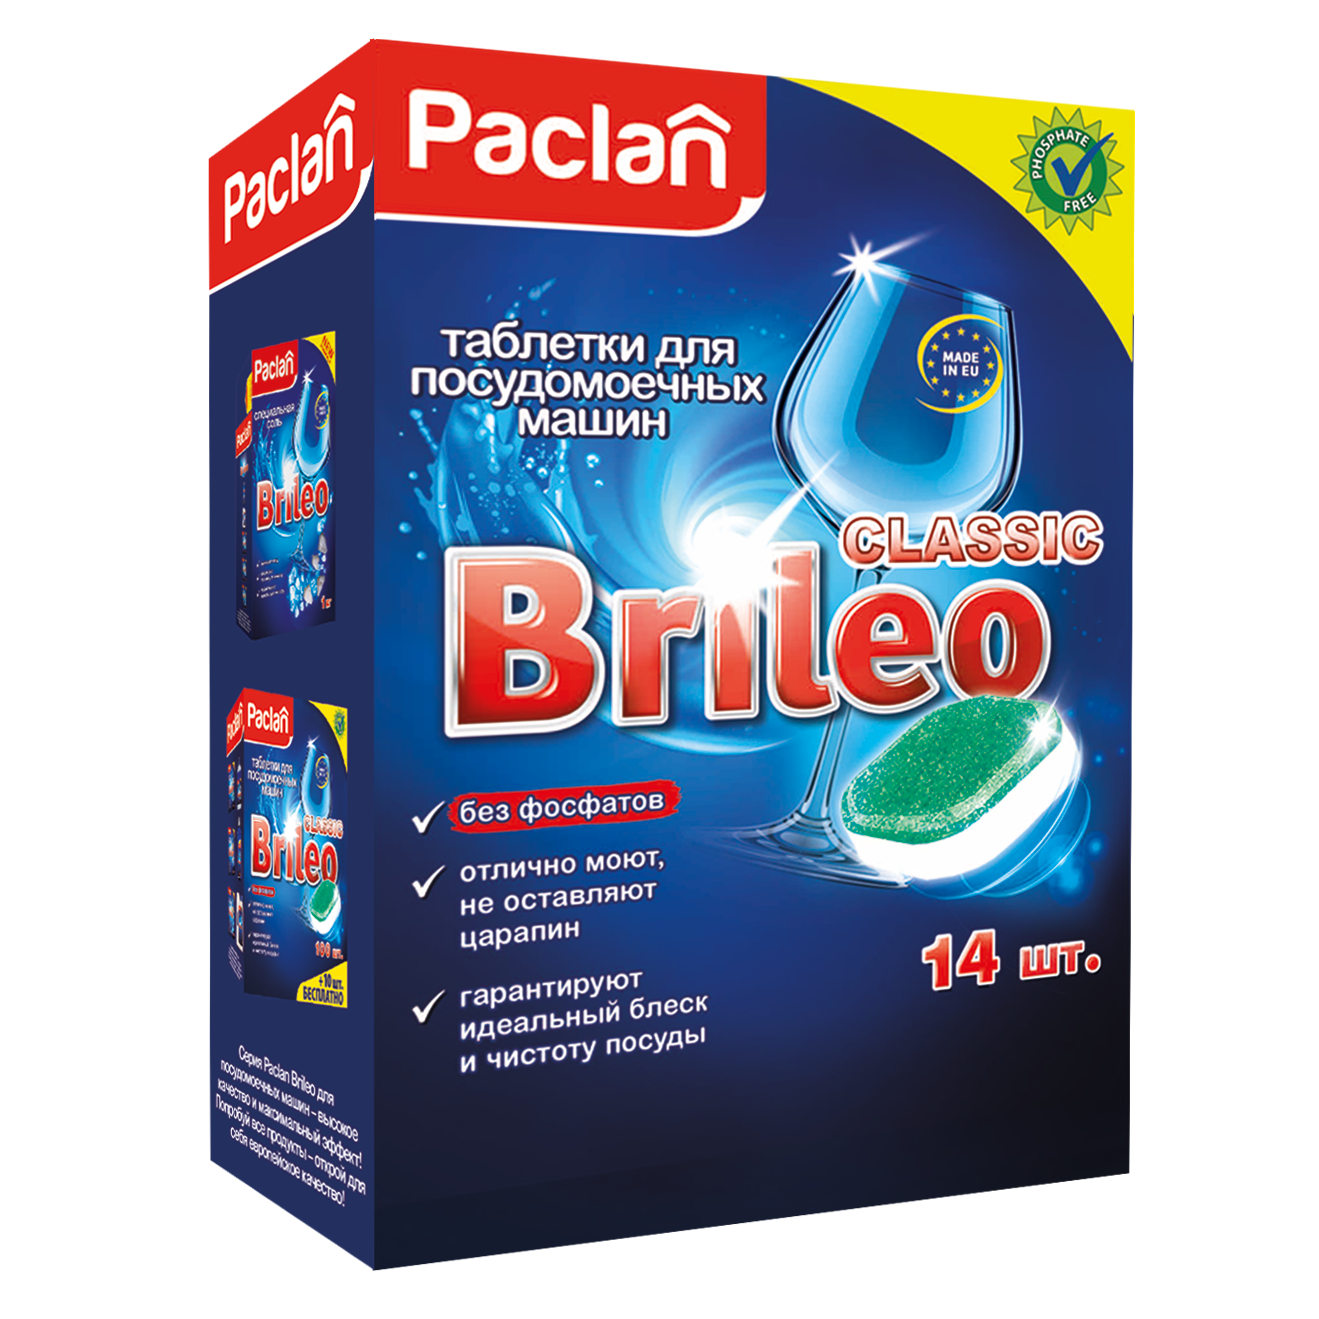 Таблетки для посудомоечной машины Paclan brileo classic 14 шт